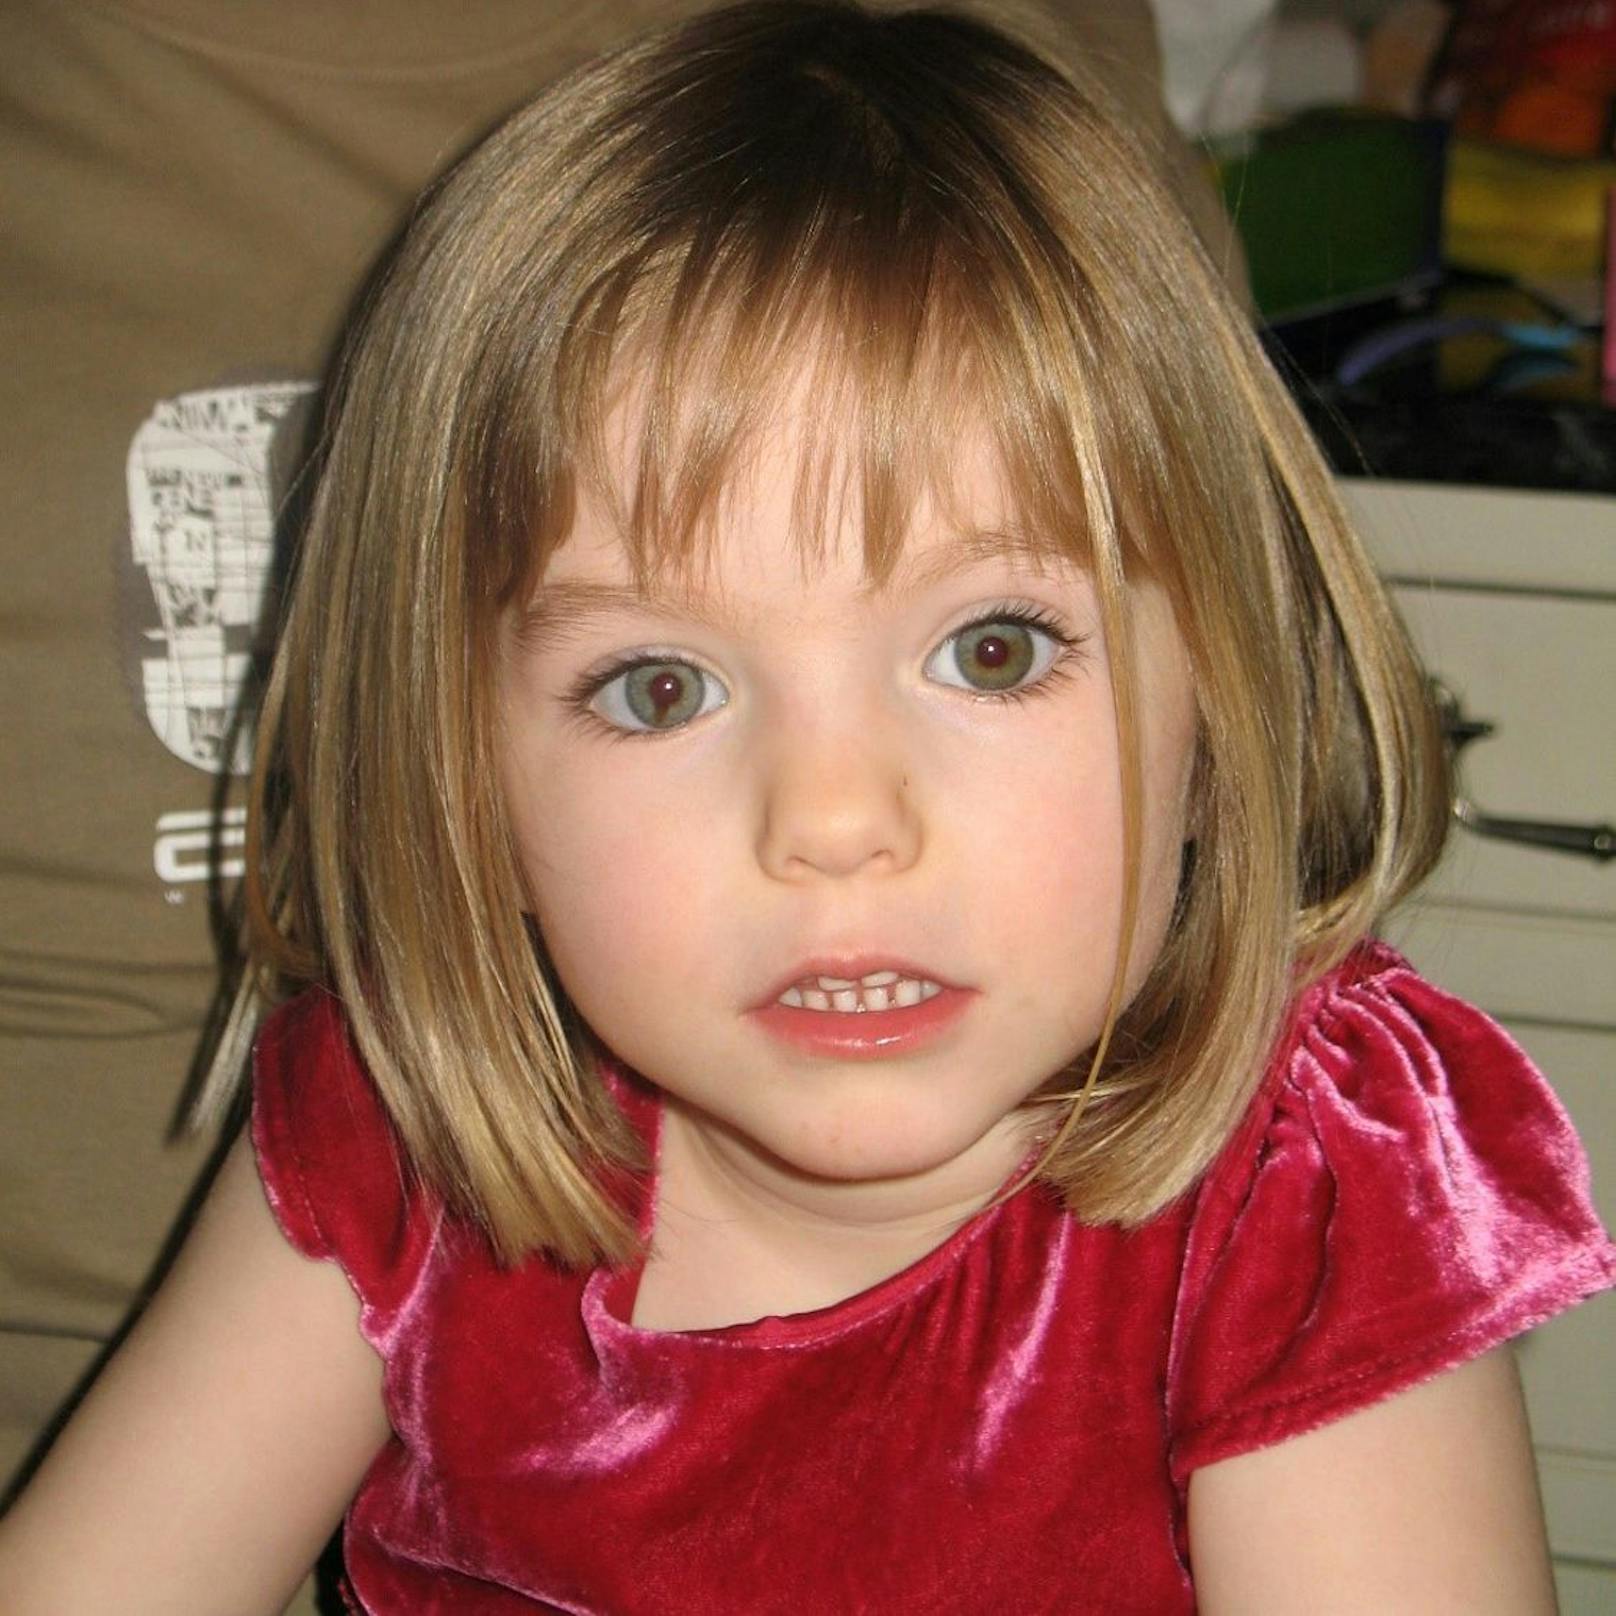 Maddie, eigentlich&nbsp;Madeleine, verschwand am 3. Mai 2007, kurz vor ihrem 4. Geburtstag, aus einer Ferienanlage in Praia da Luz, Portugal.